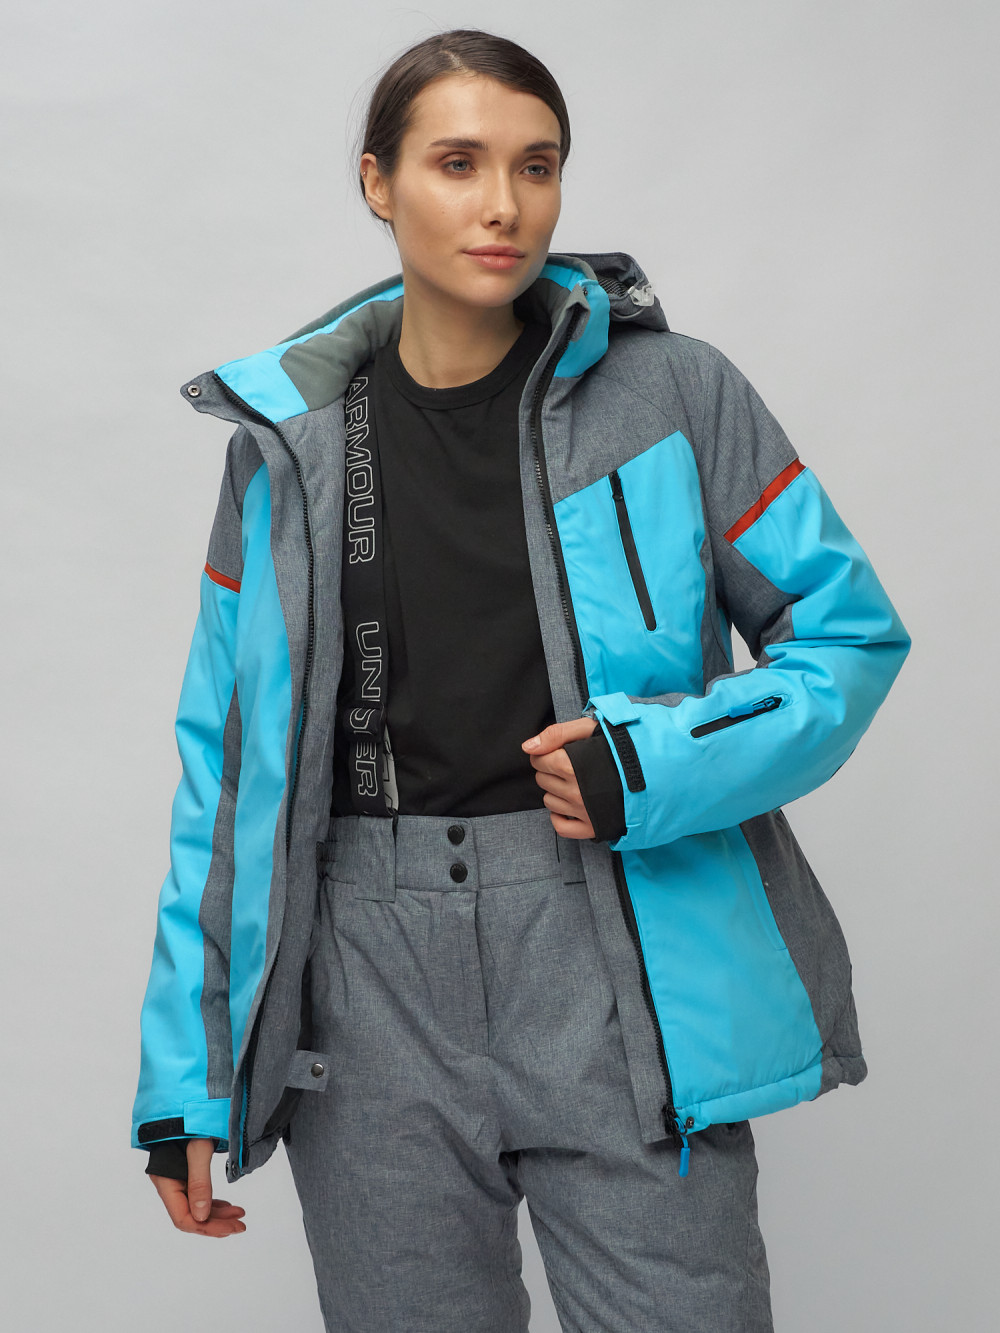 Купить горнолыжный костюм женский оптом от производителя недорого в Москве 02272-2Gl 1